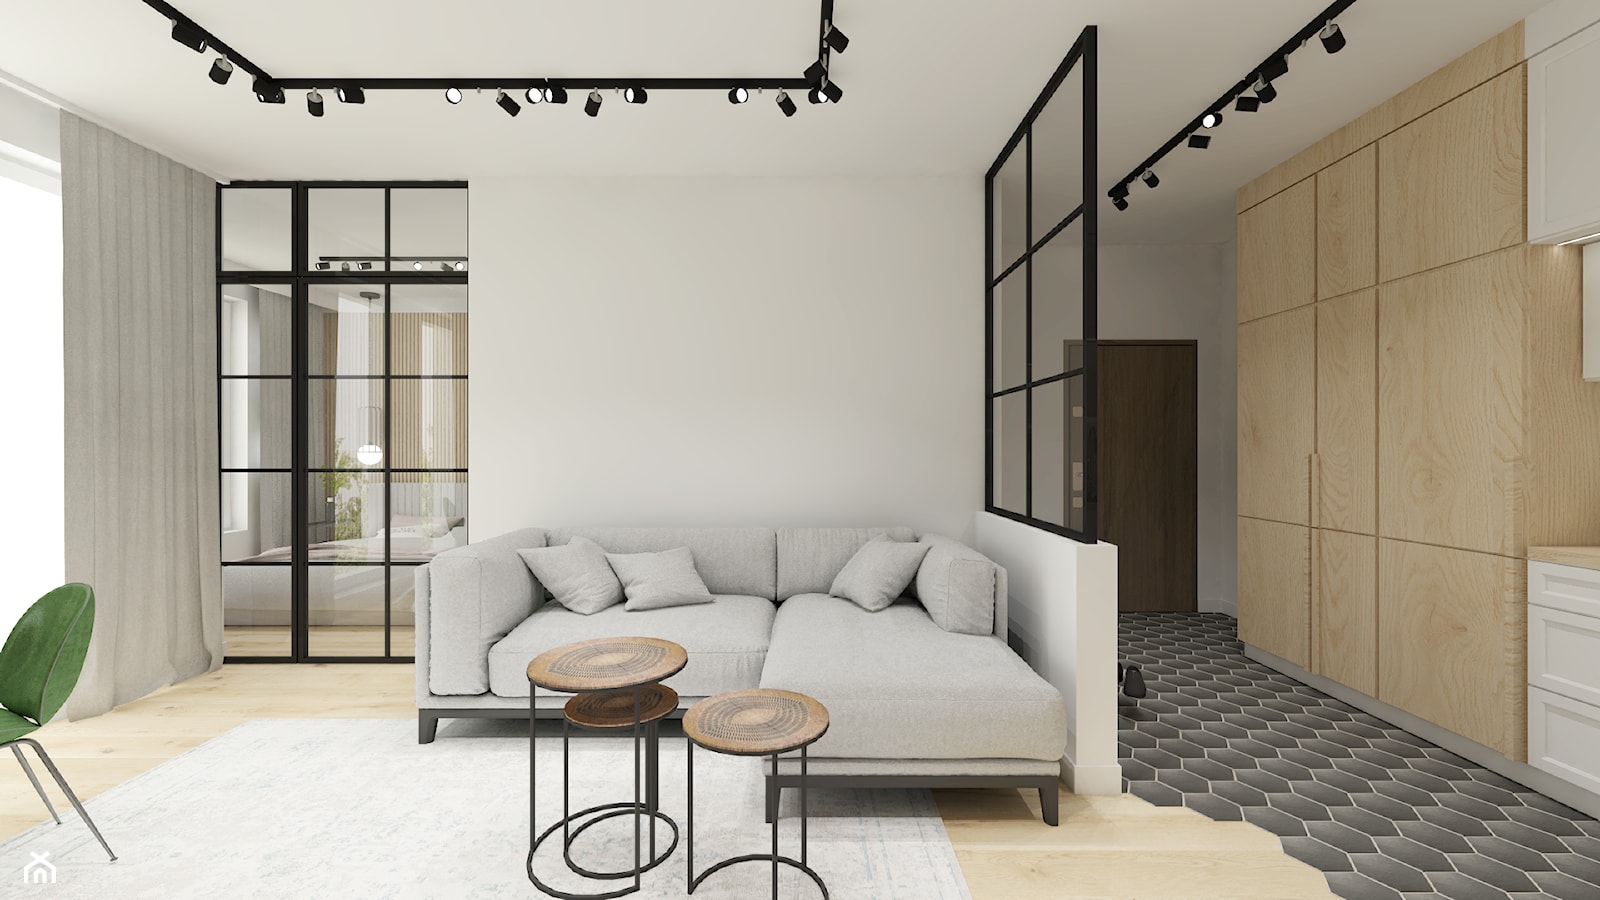 Apartament w stylu loftowym - Salon, styl skandynawski - zdjęcie od Gama Design - Homebook